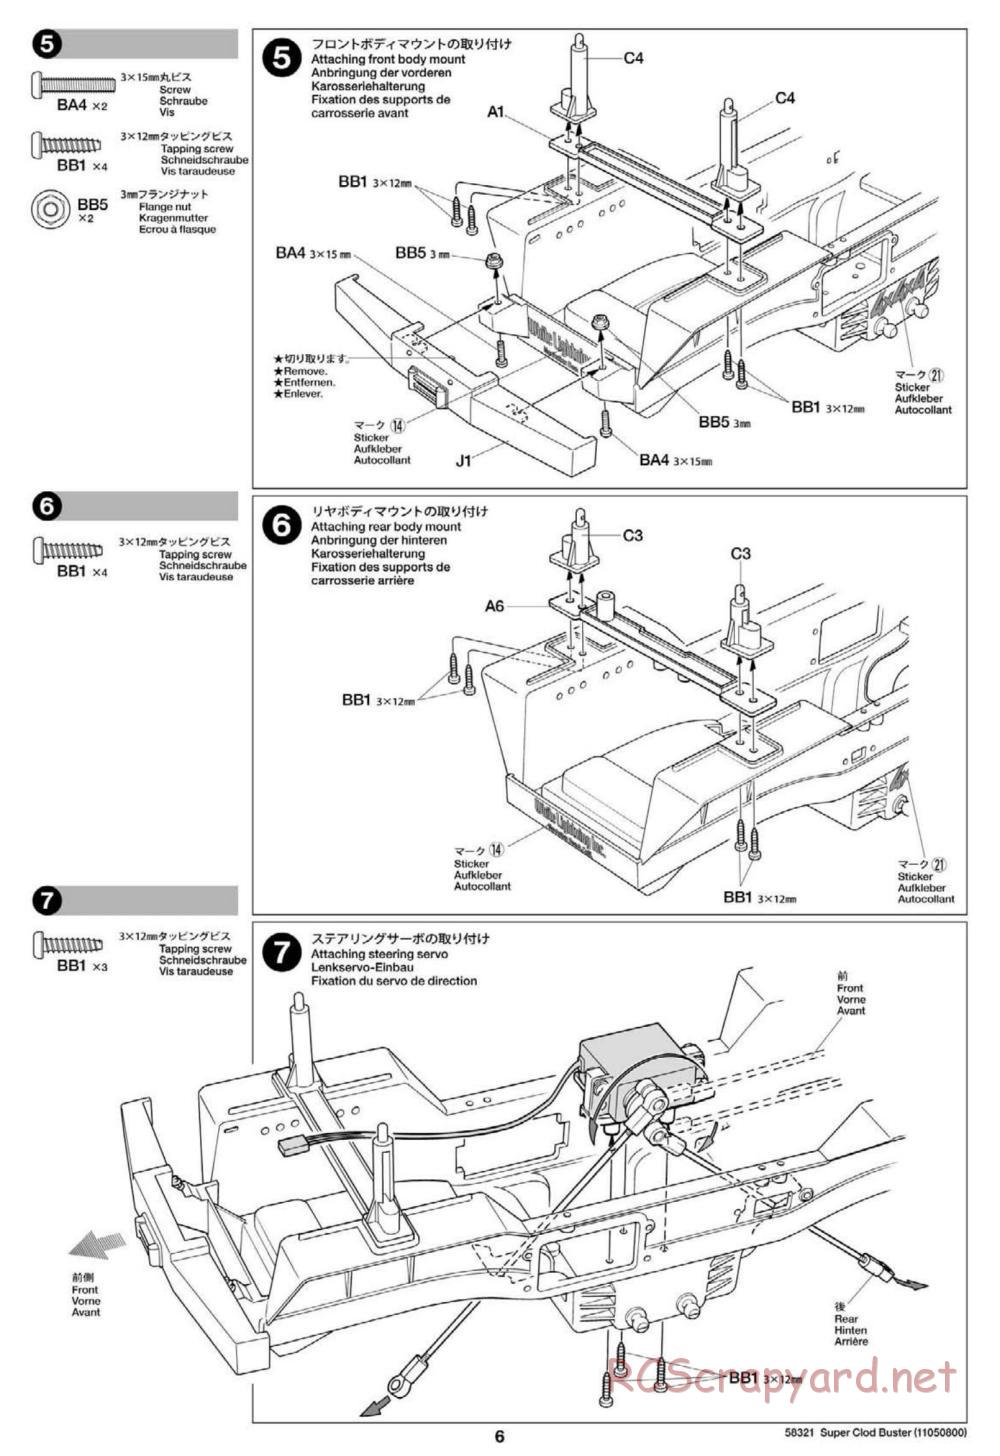 Tamiya - Super Clod Buster Chassis - Manual - Page 6